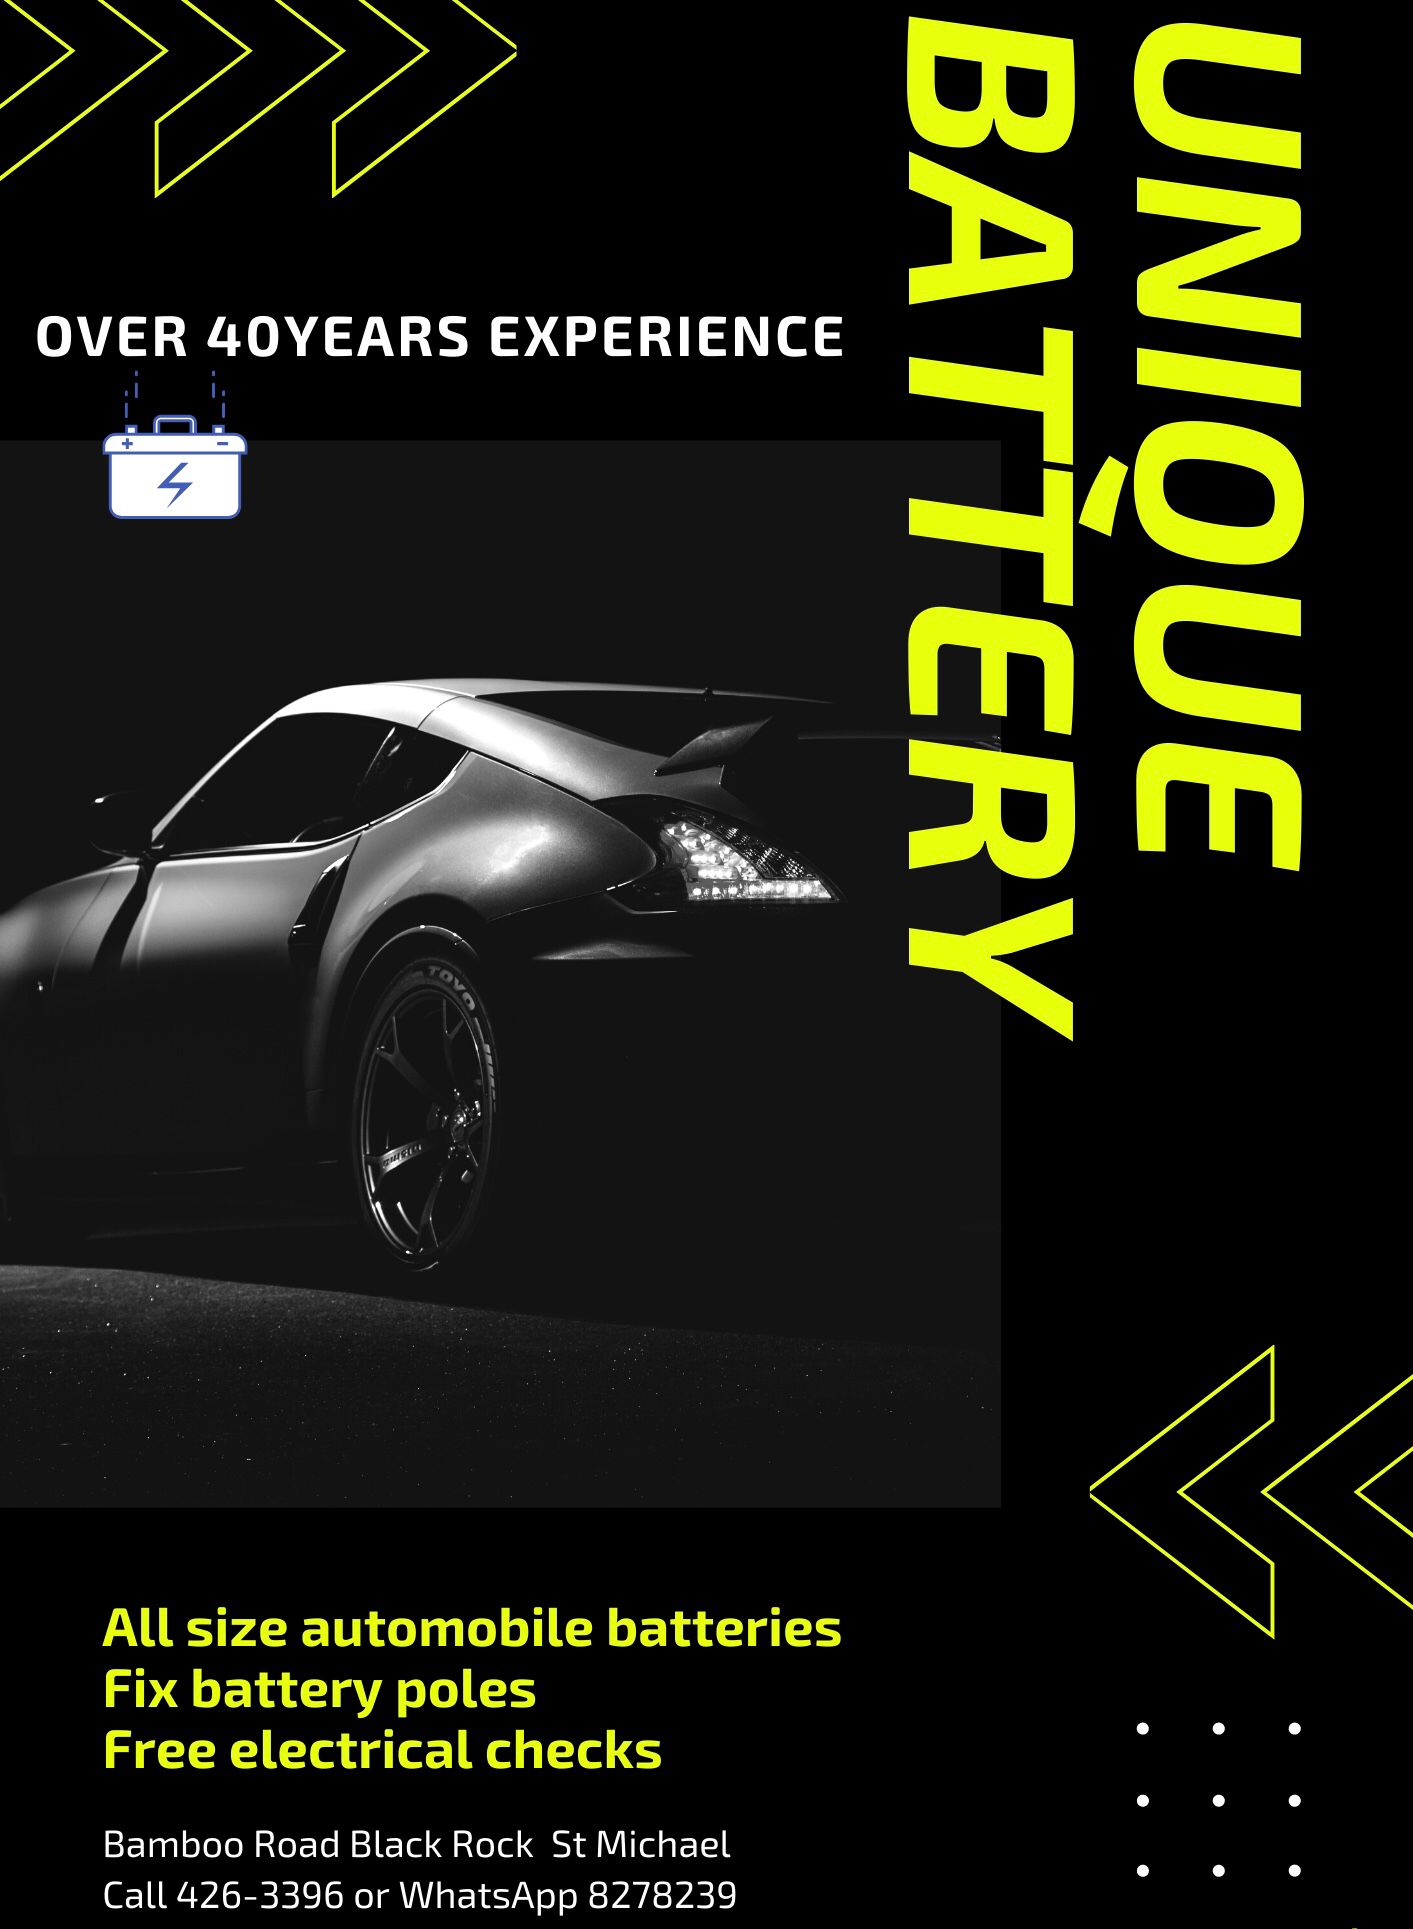 Unique Battery & Electrical Services - Batteries Storage-Retail-Wholesale & Manufacturers